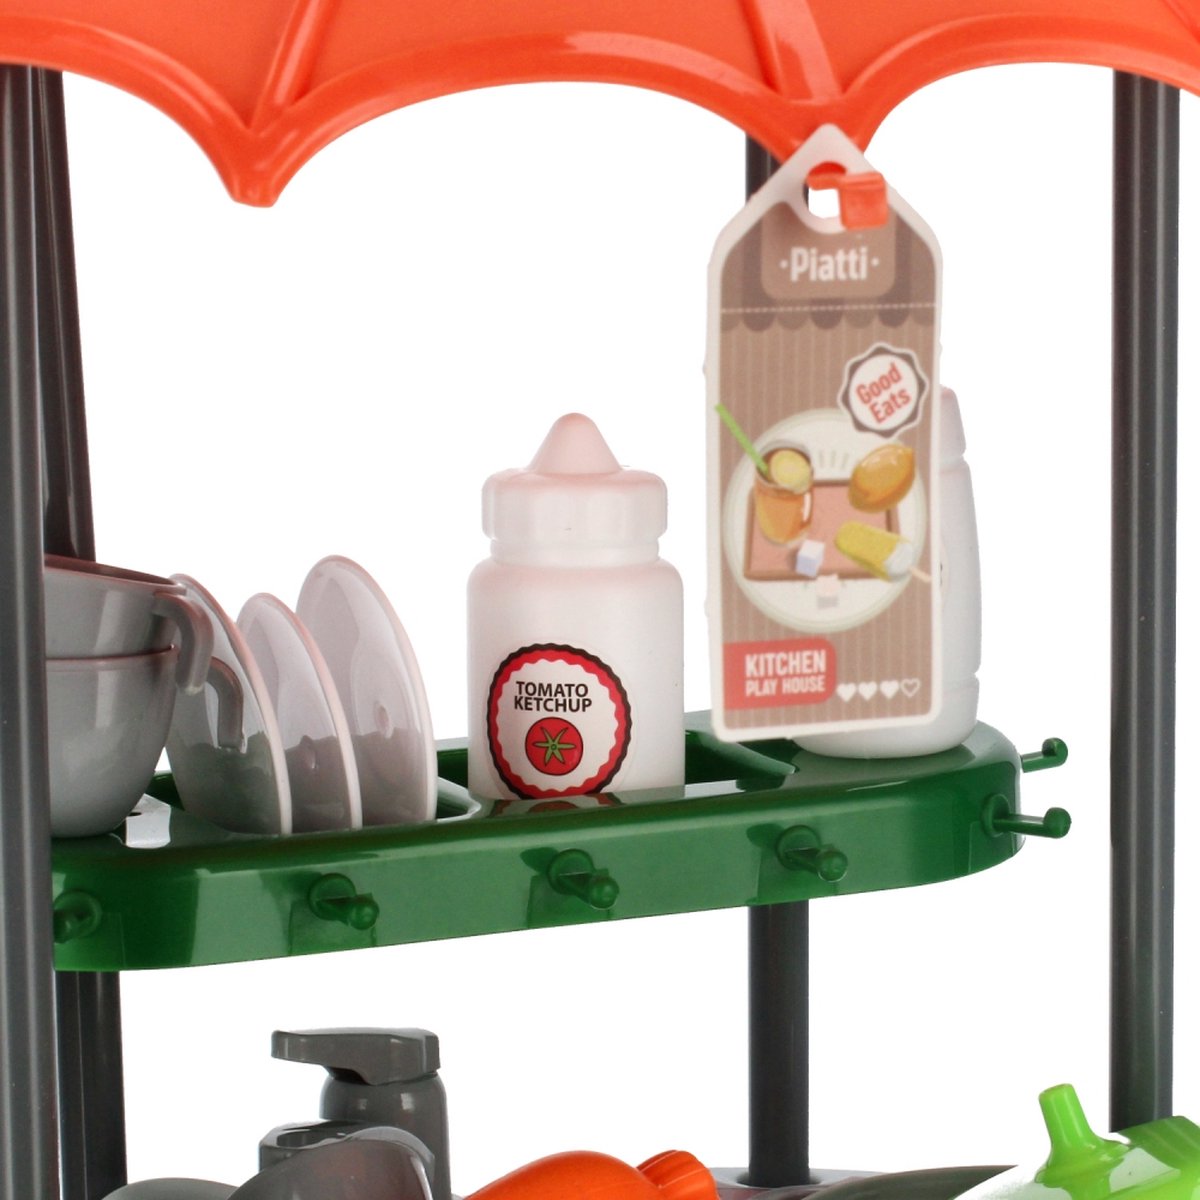 Ariko Spielzeugwagen Küche 47-teilig - Kochtöpfe, Gewürze, Geschirr, Spüle und vieles mehr - praktischer Koffer mit Rollen